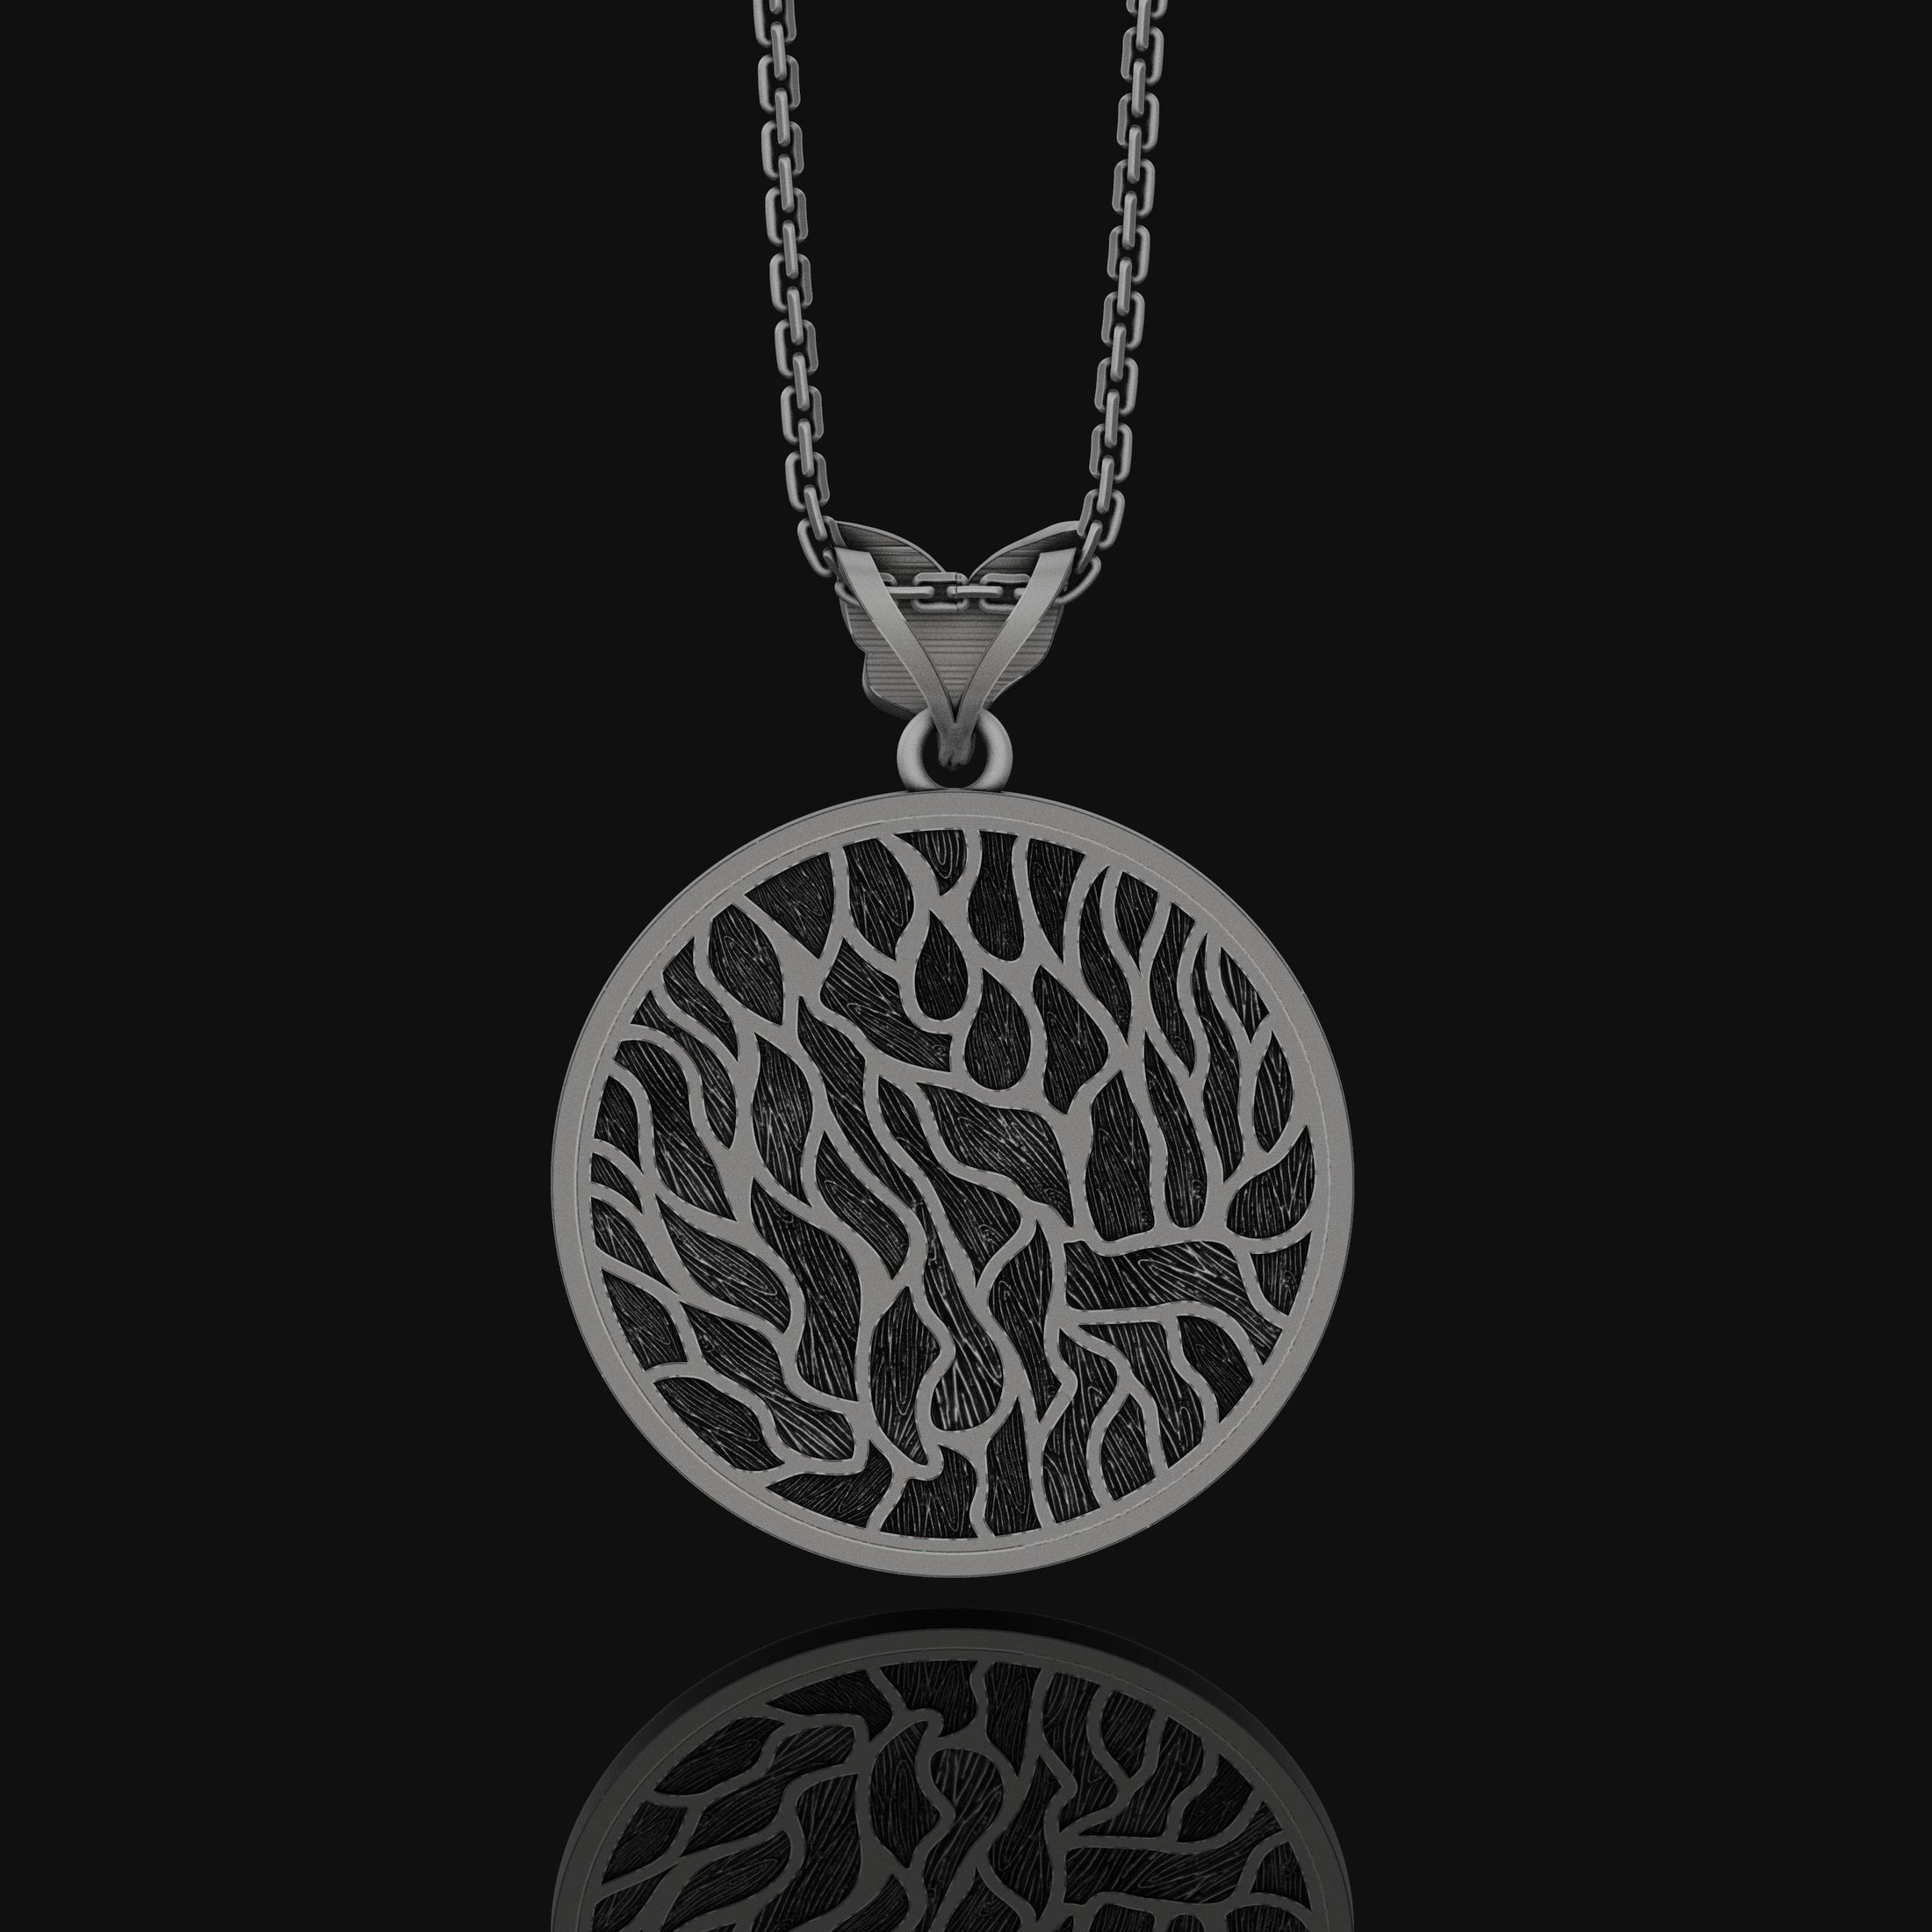 Yggdrasil Tree Of Life Pendant, Norse Mythology Gift, Vikings Asgard, Norse Mythology, Norse Pagan Necklace, Celtic World Tree